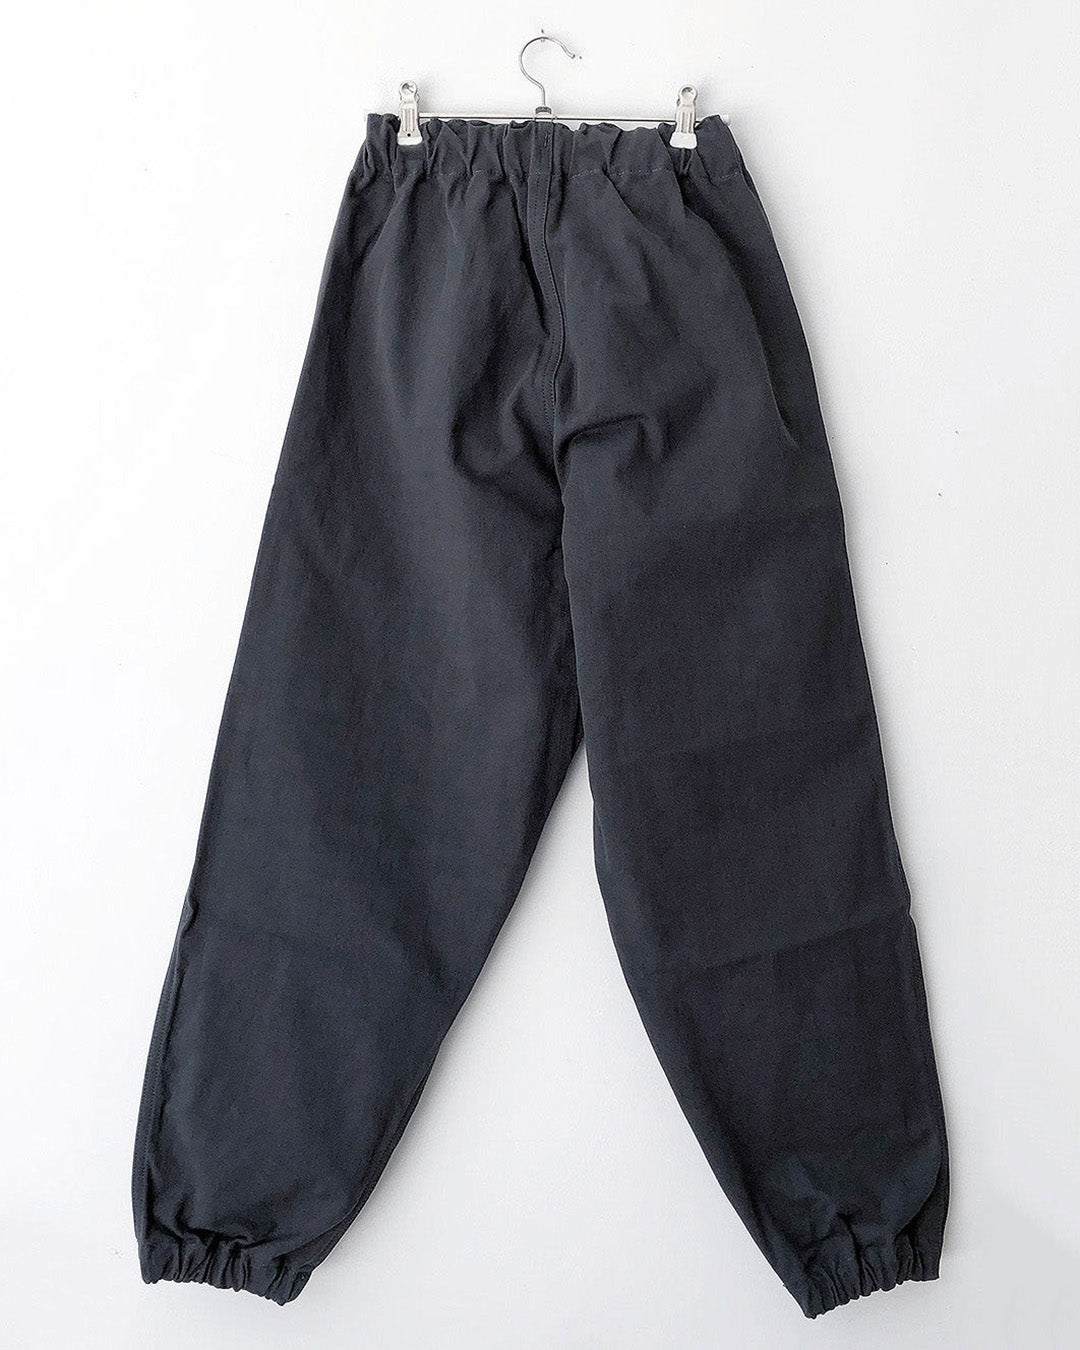 TUKI gum pants / steel blue / solid twill / size2